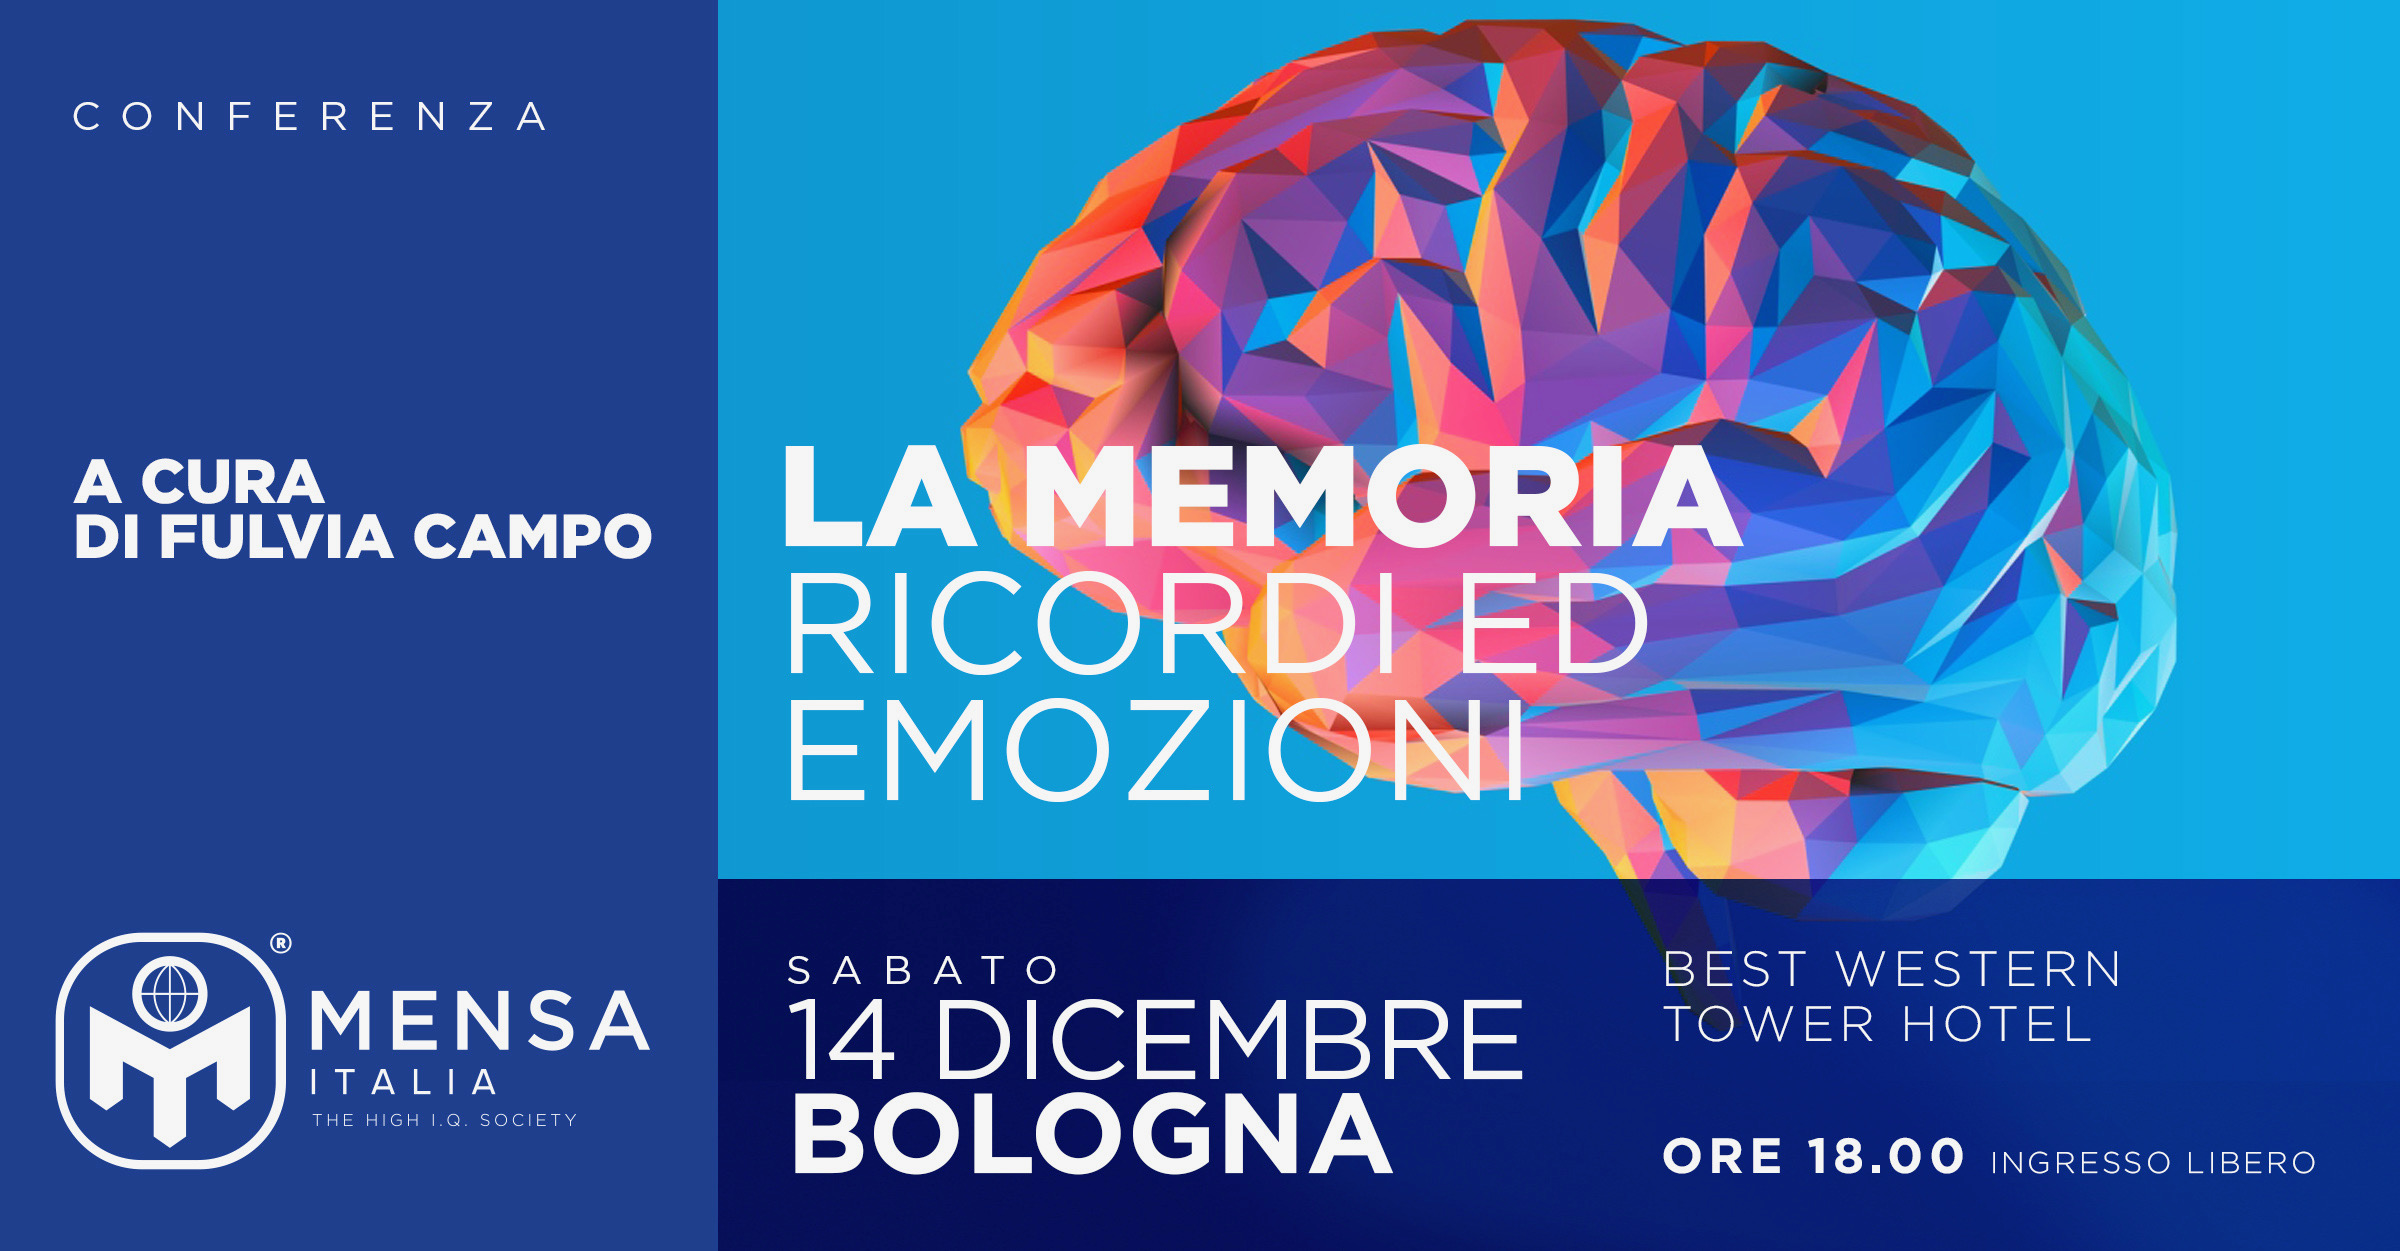 Bologna, 14.12.2019. Conferenza “La Memoria: Ricordi ed Emozioni” a cura di Fulvia Campo.